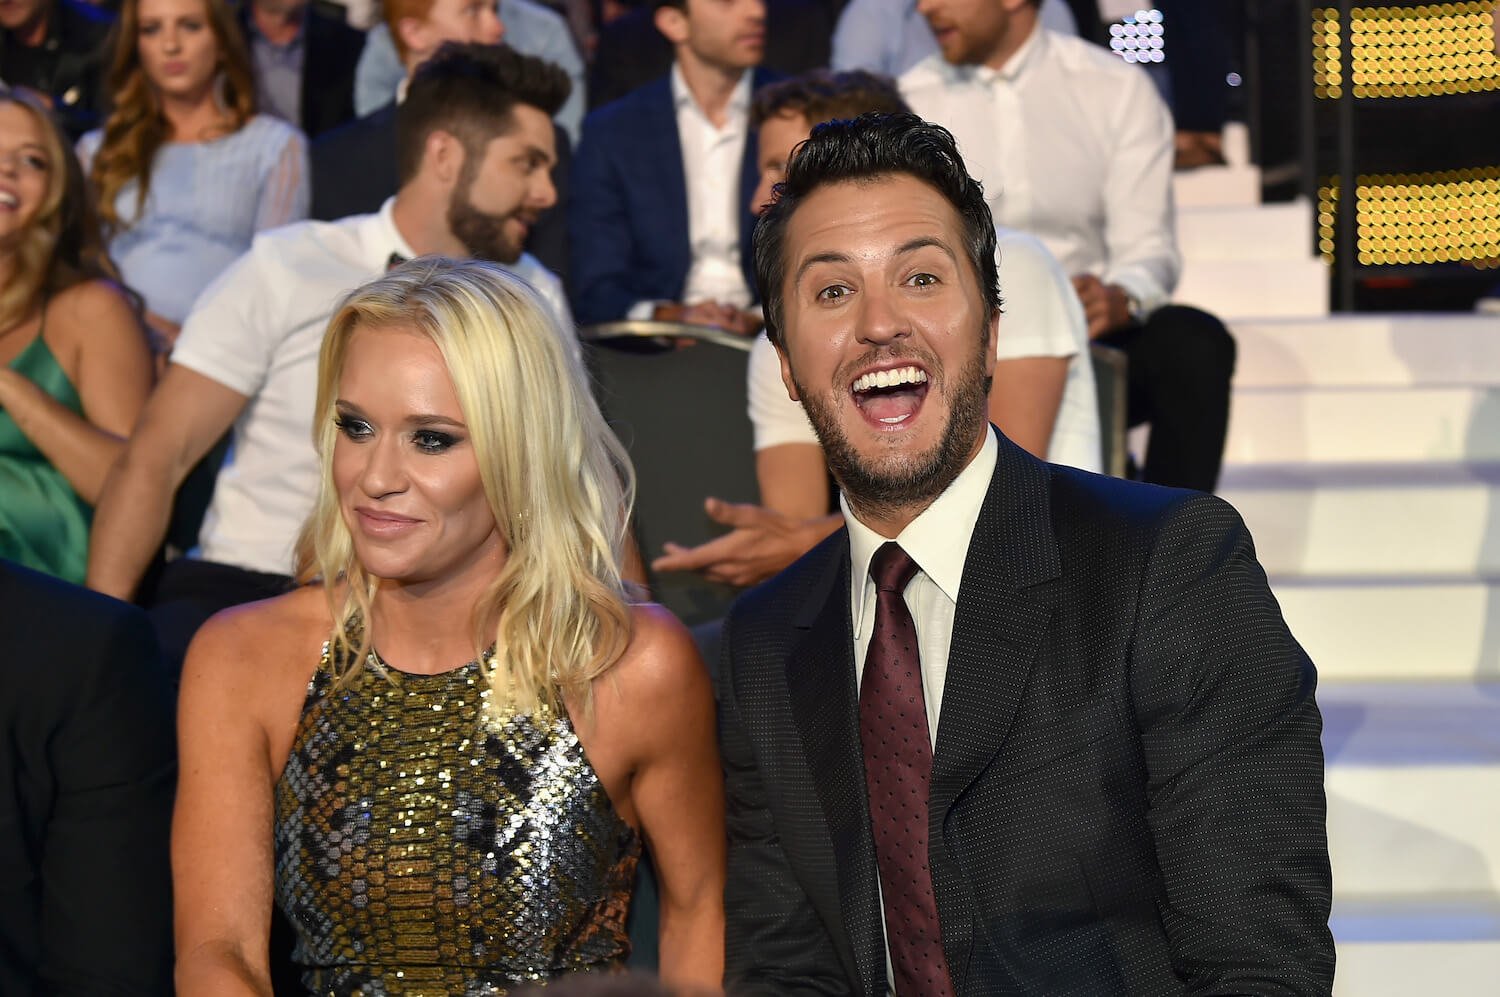 Luke Bryan smiling big while sitting next to his wife, Caroline Bryan, at the CMT Music Awards